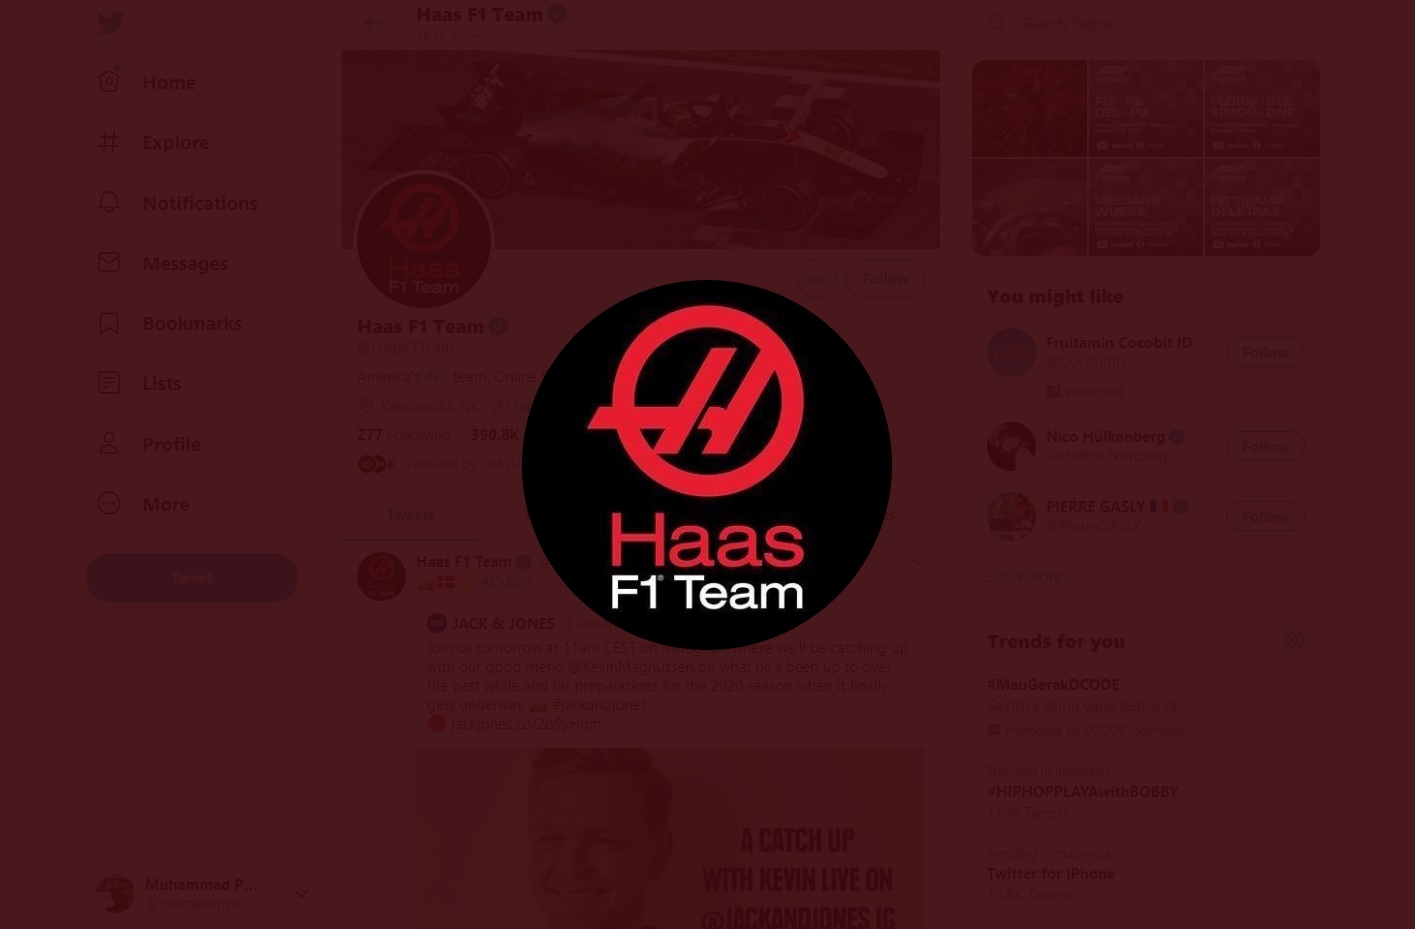 Kevin Magnussen Yakin Pembalap Tak Akan Kagok Saat F1 2020 Dimulai